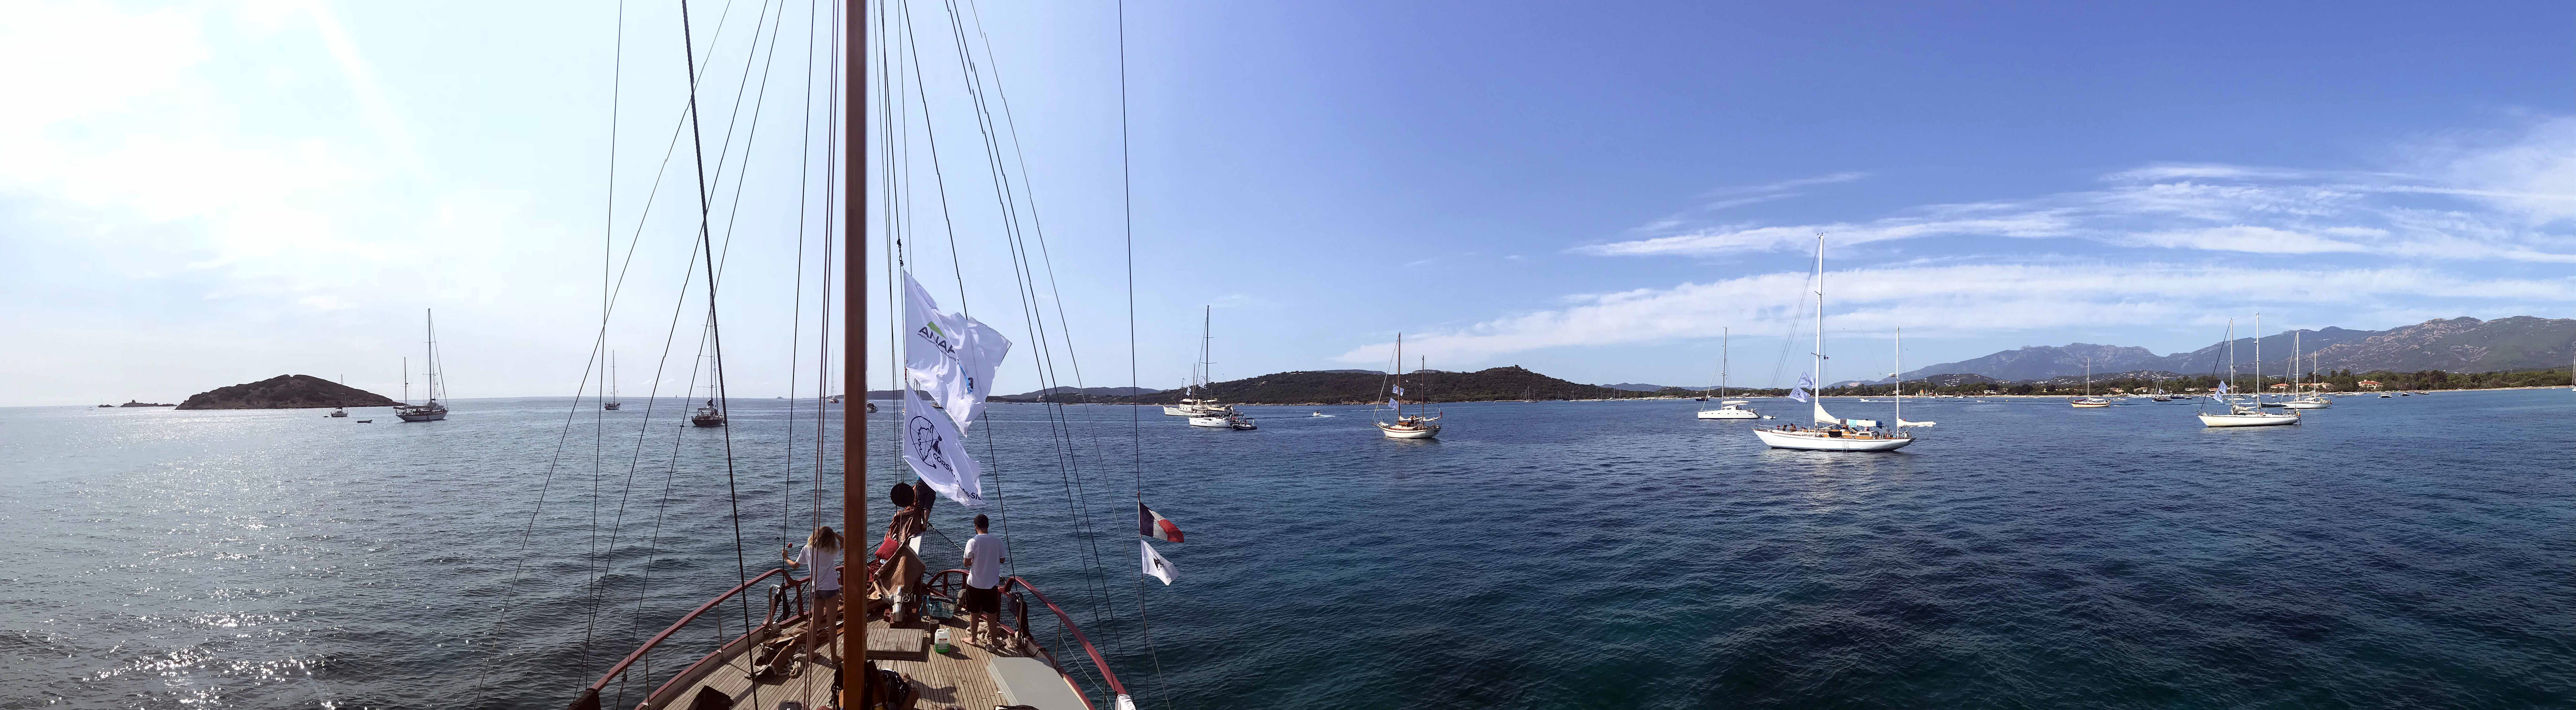 CC 2018 la flotte vue de SY Turkish Delight photo Thibaud Assante